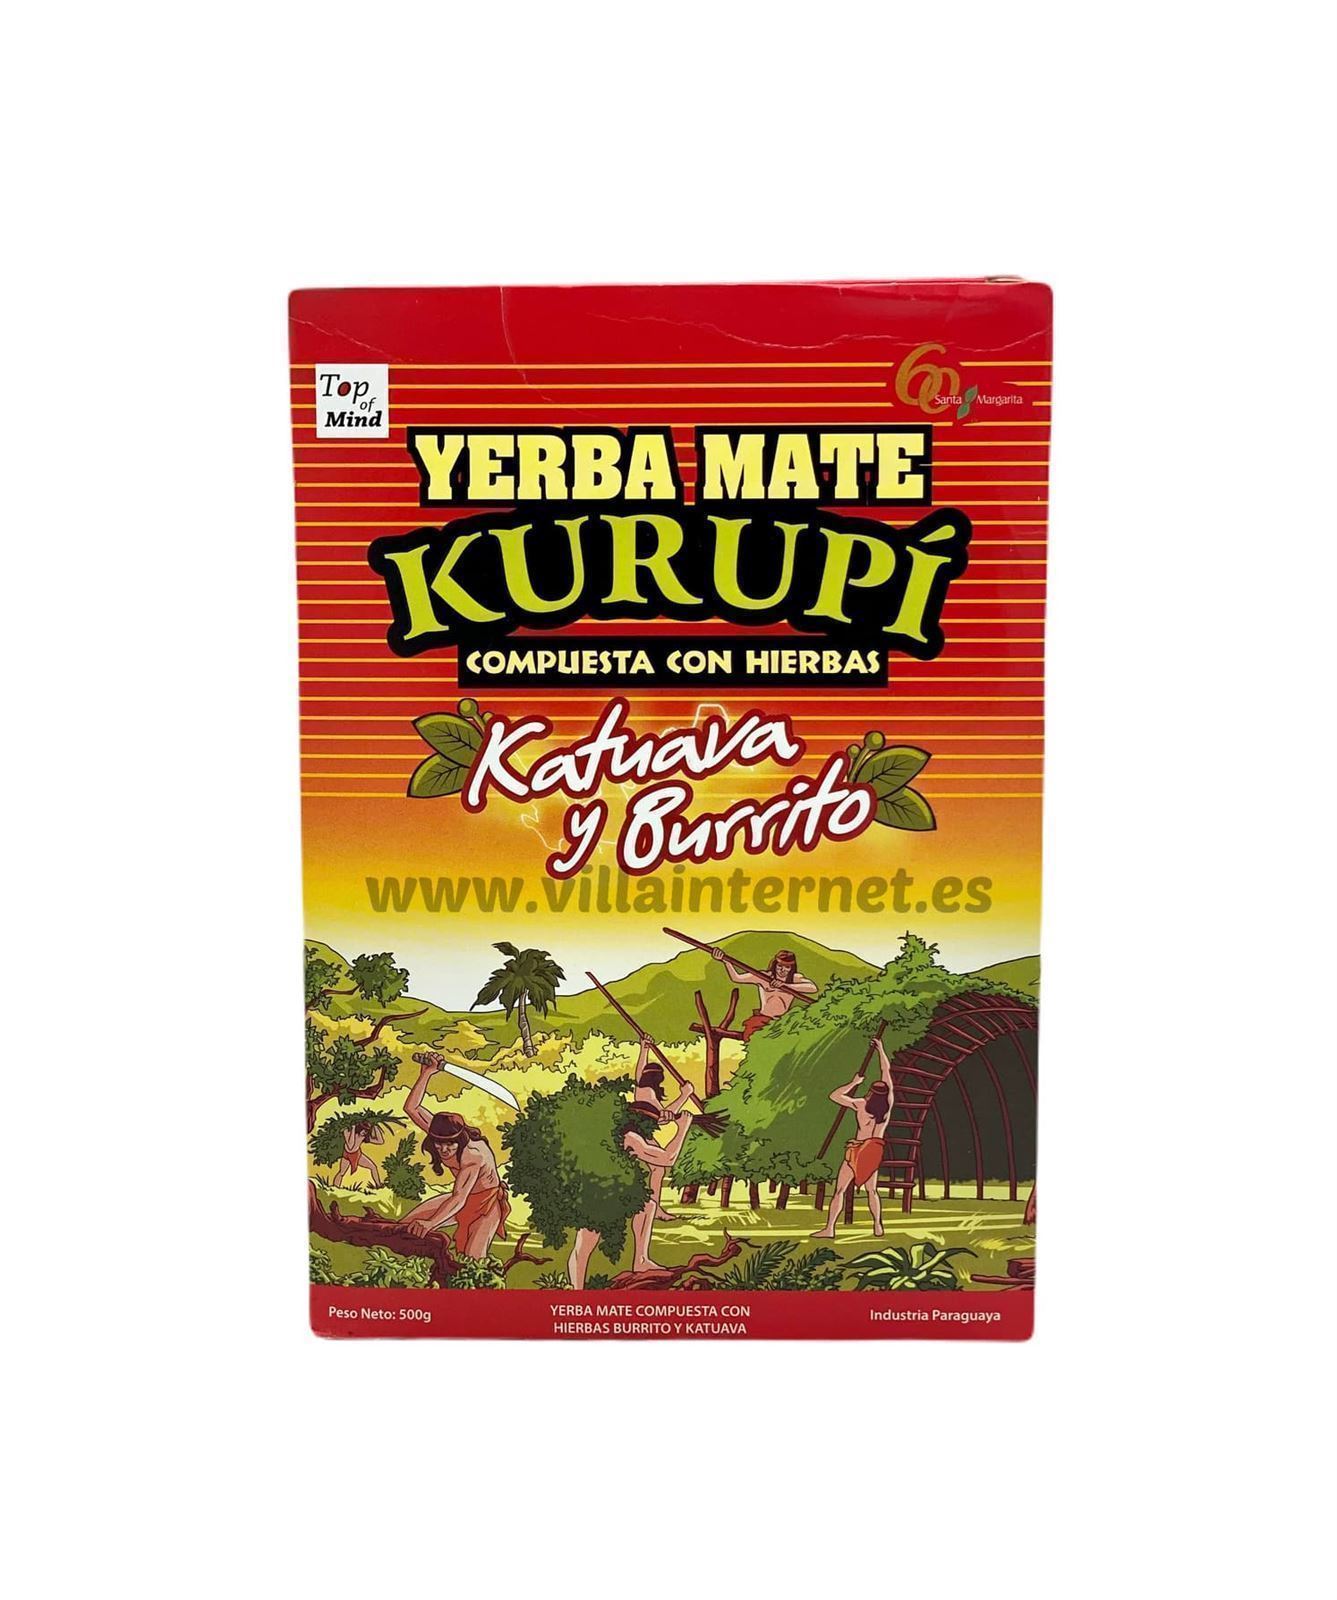 Yerba mate Kurupí compuesta con hierbas katuava y burrito 500g - Imagen 1